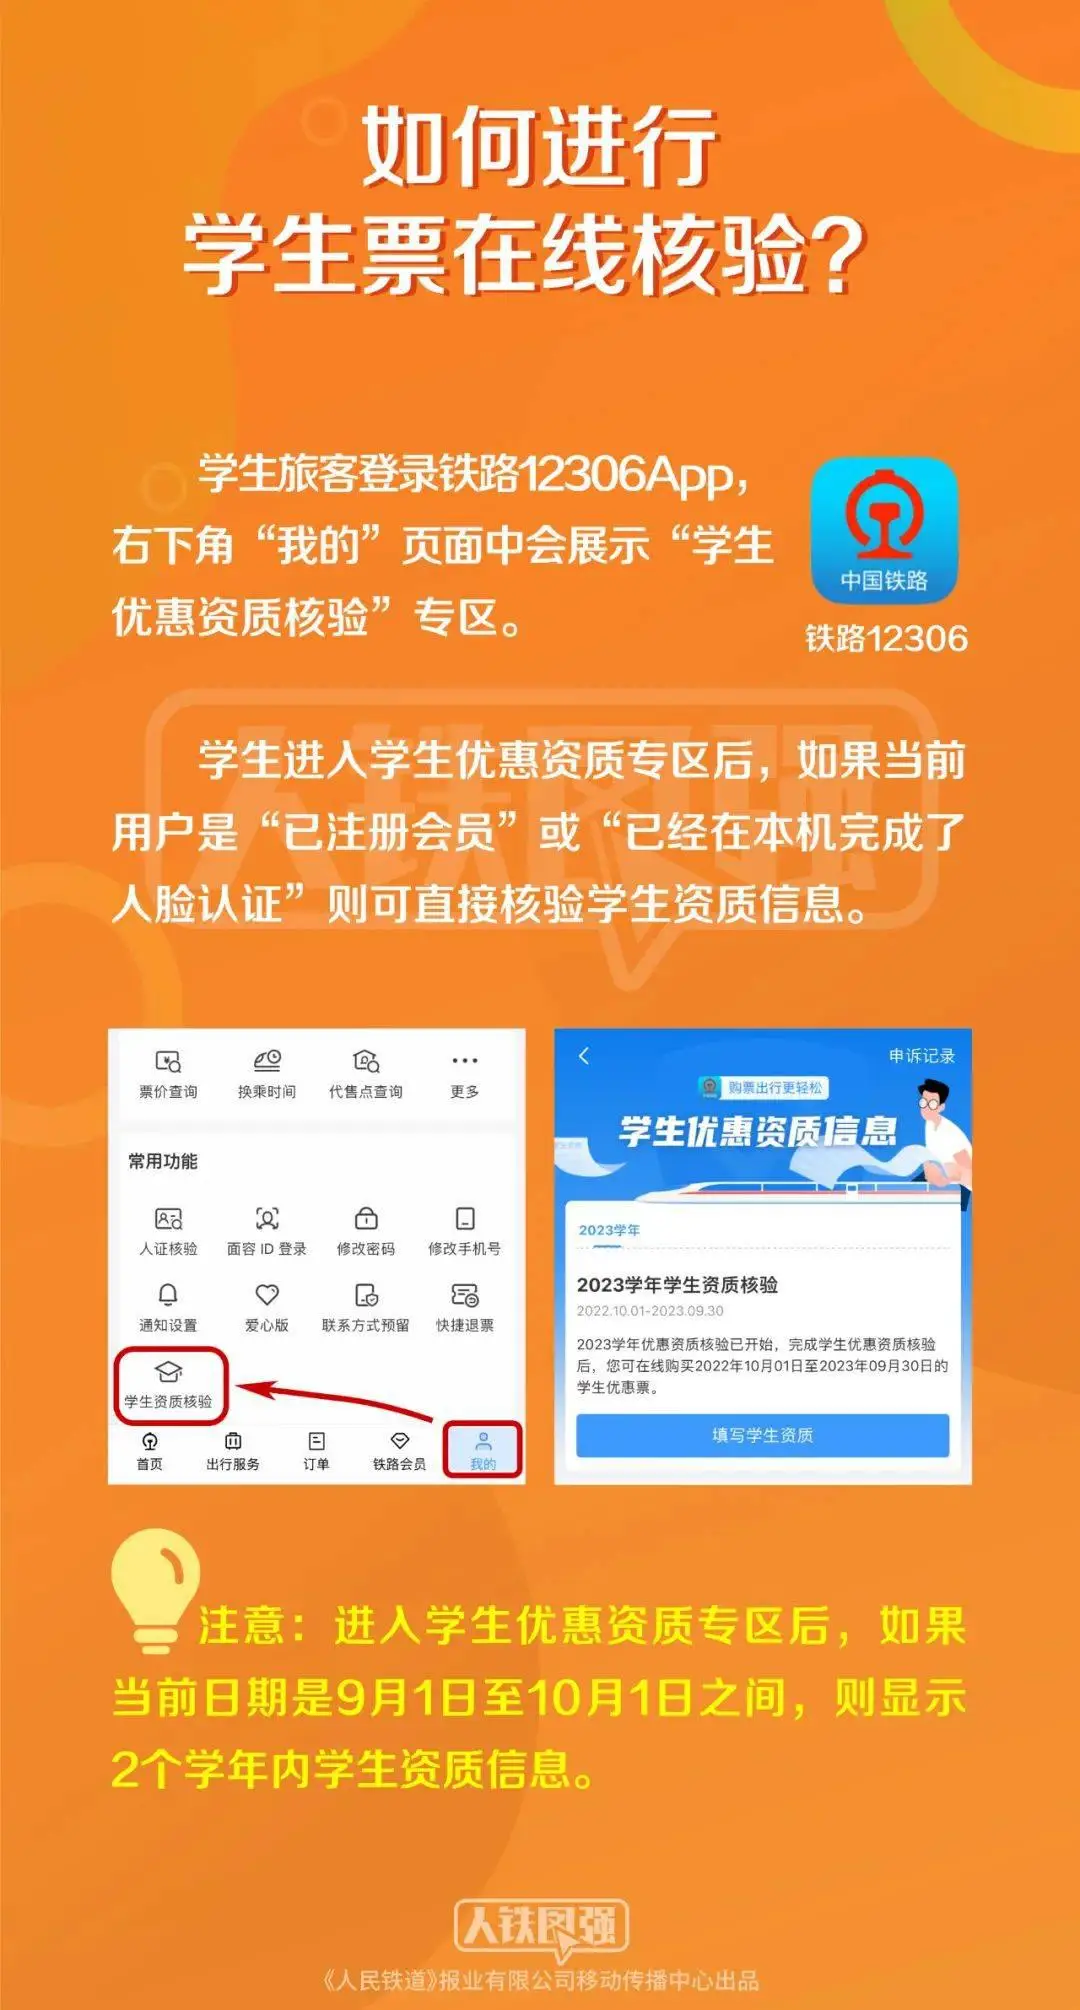 中国铁路12306订票app_12306铁路订票官网app_铁路12306官网订票下载